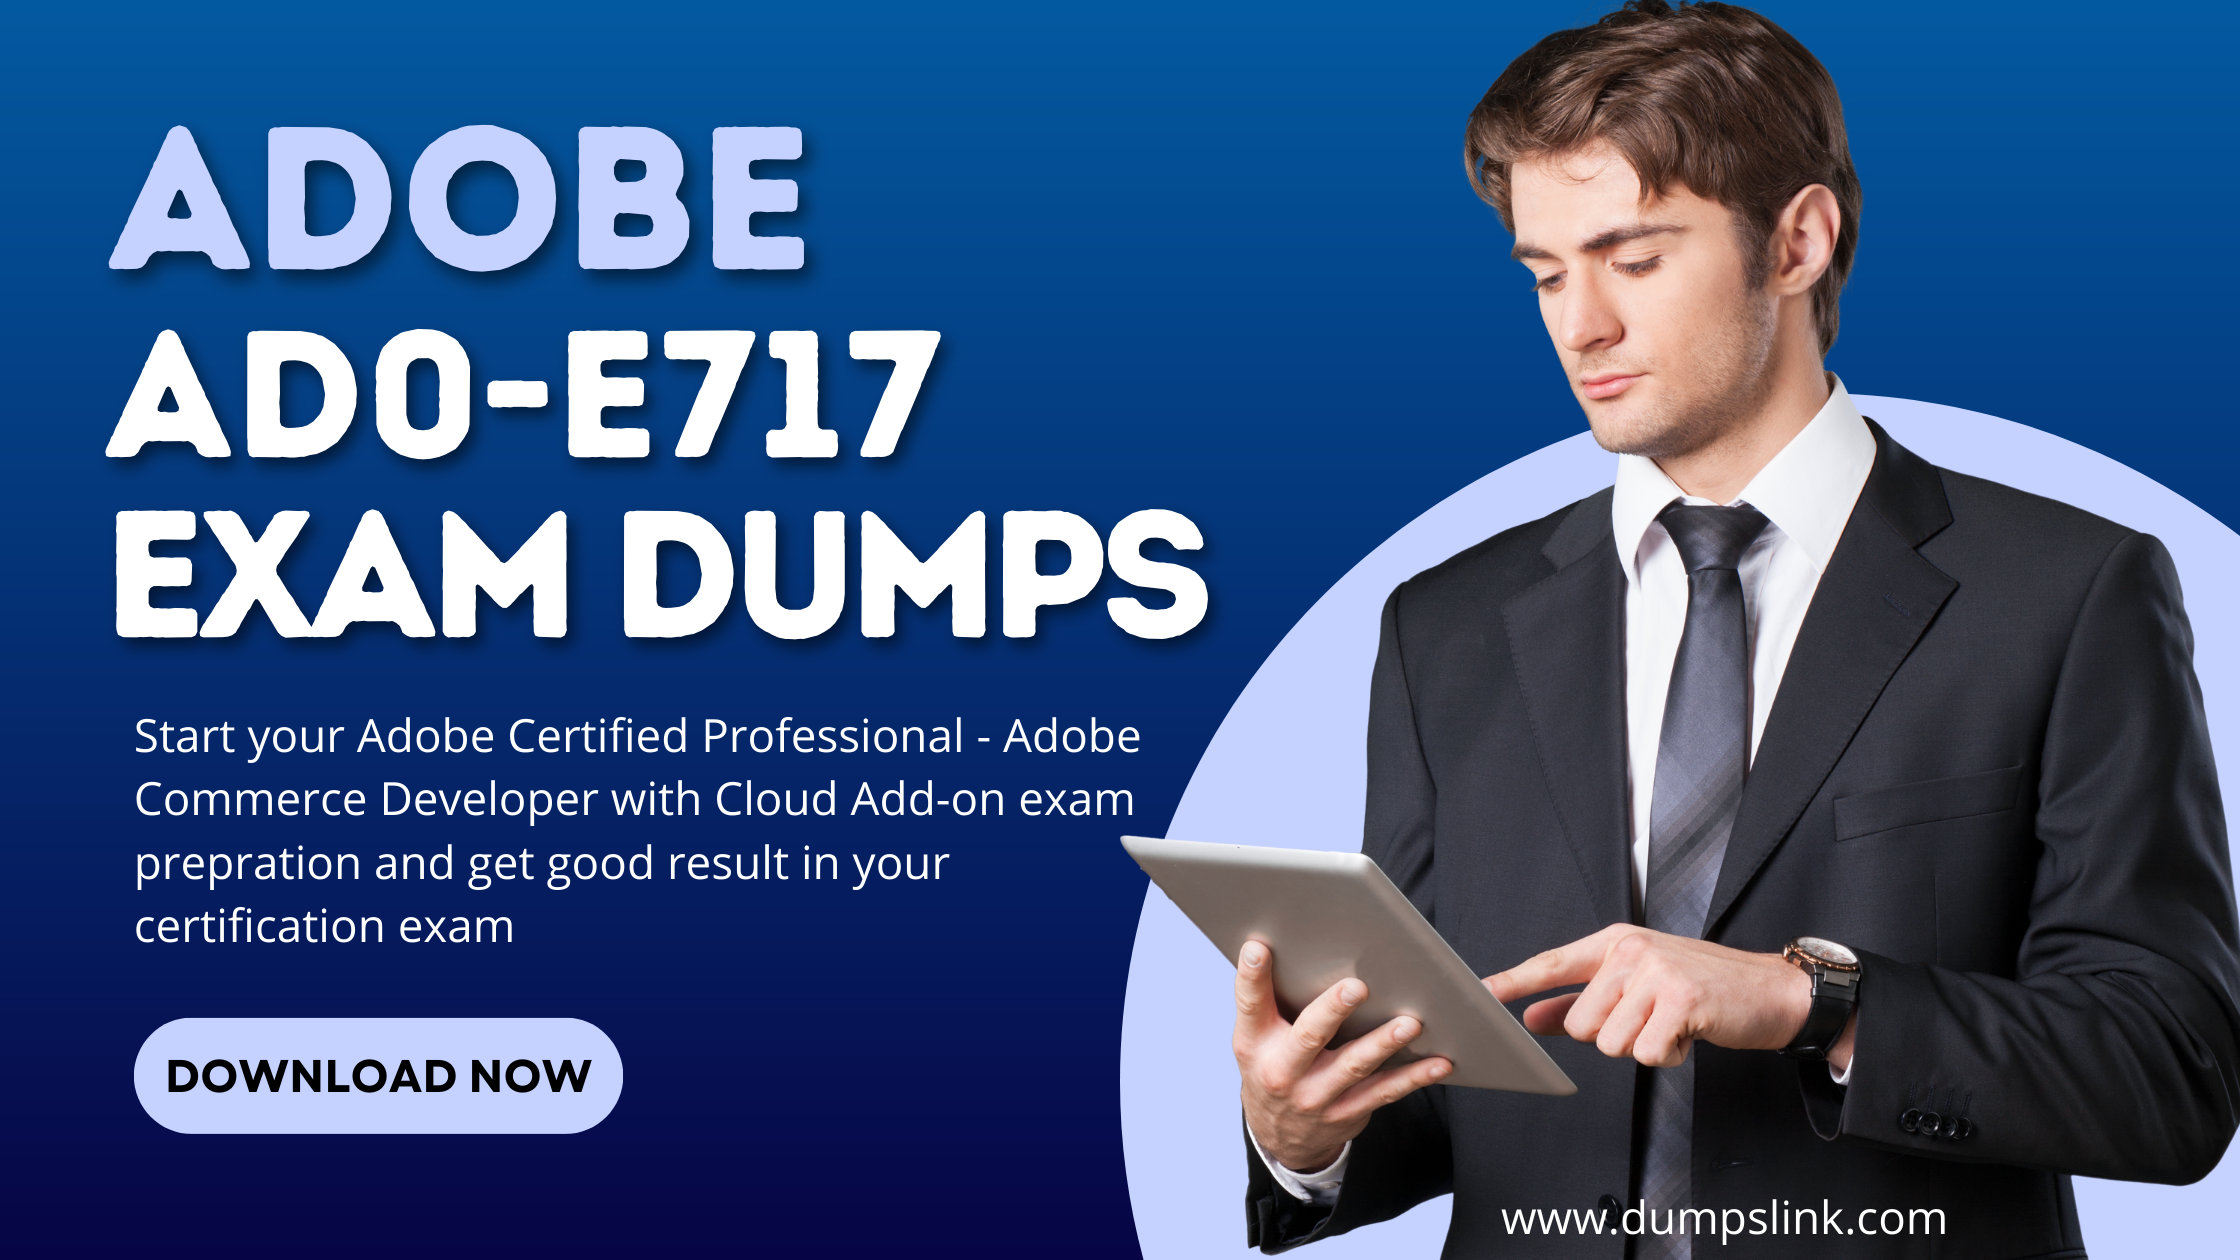 AD0-E717 Exam Dumps PDF